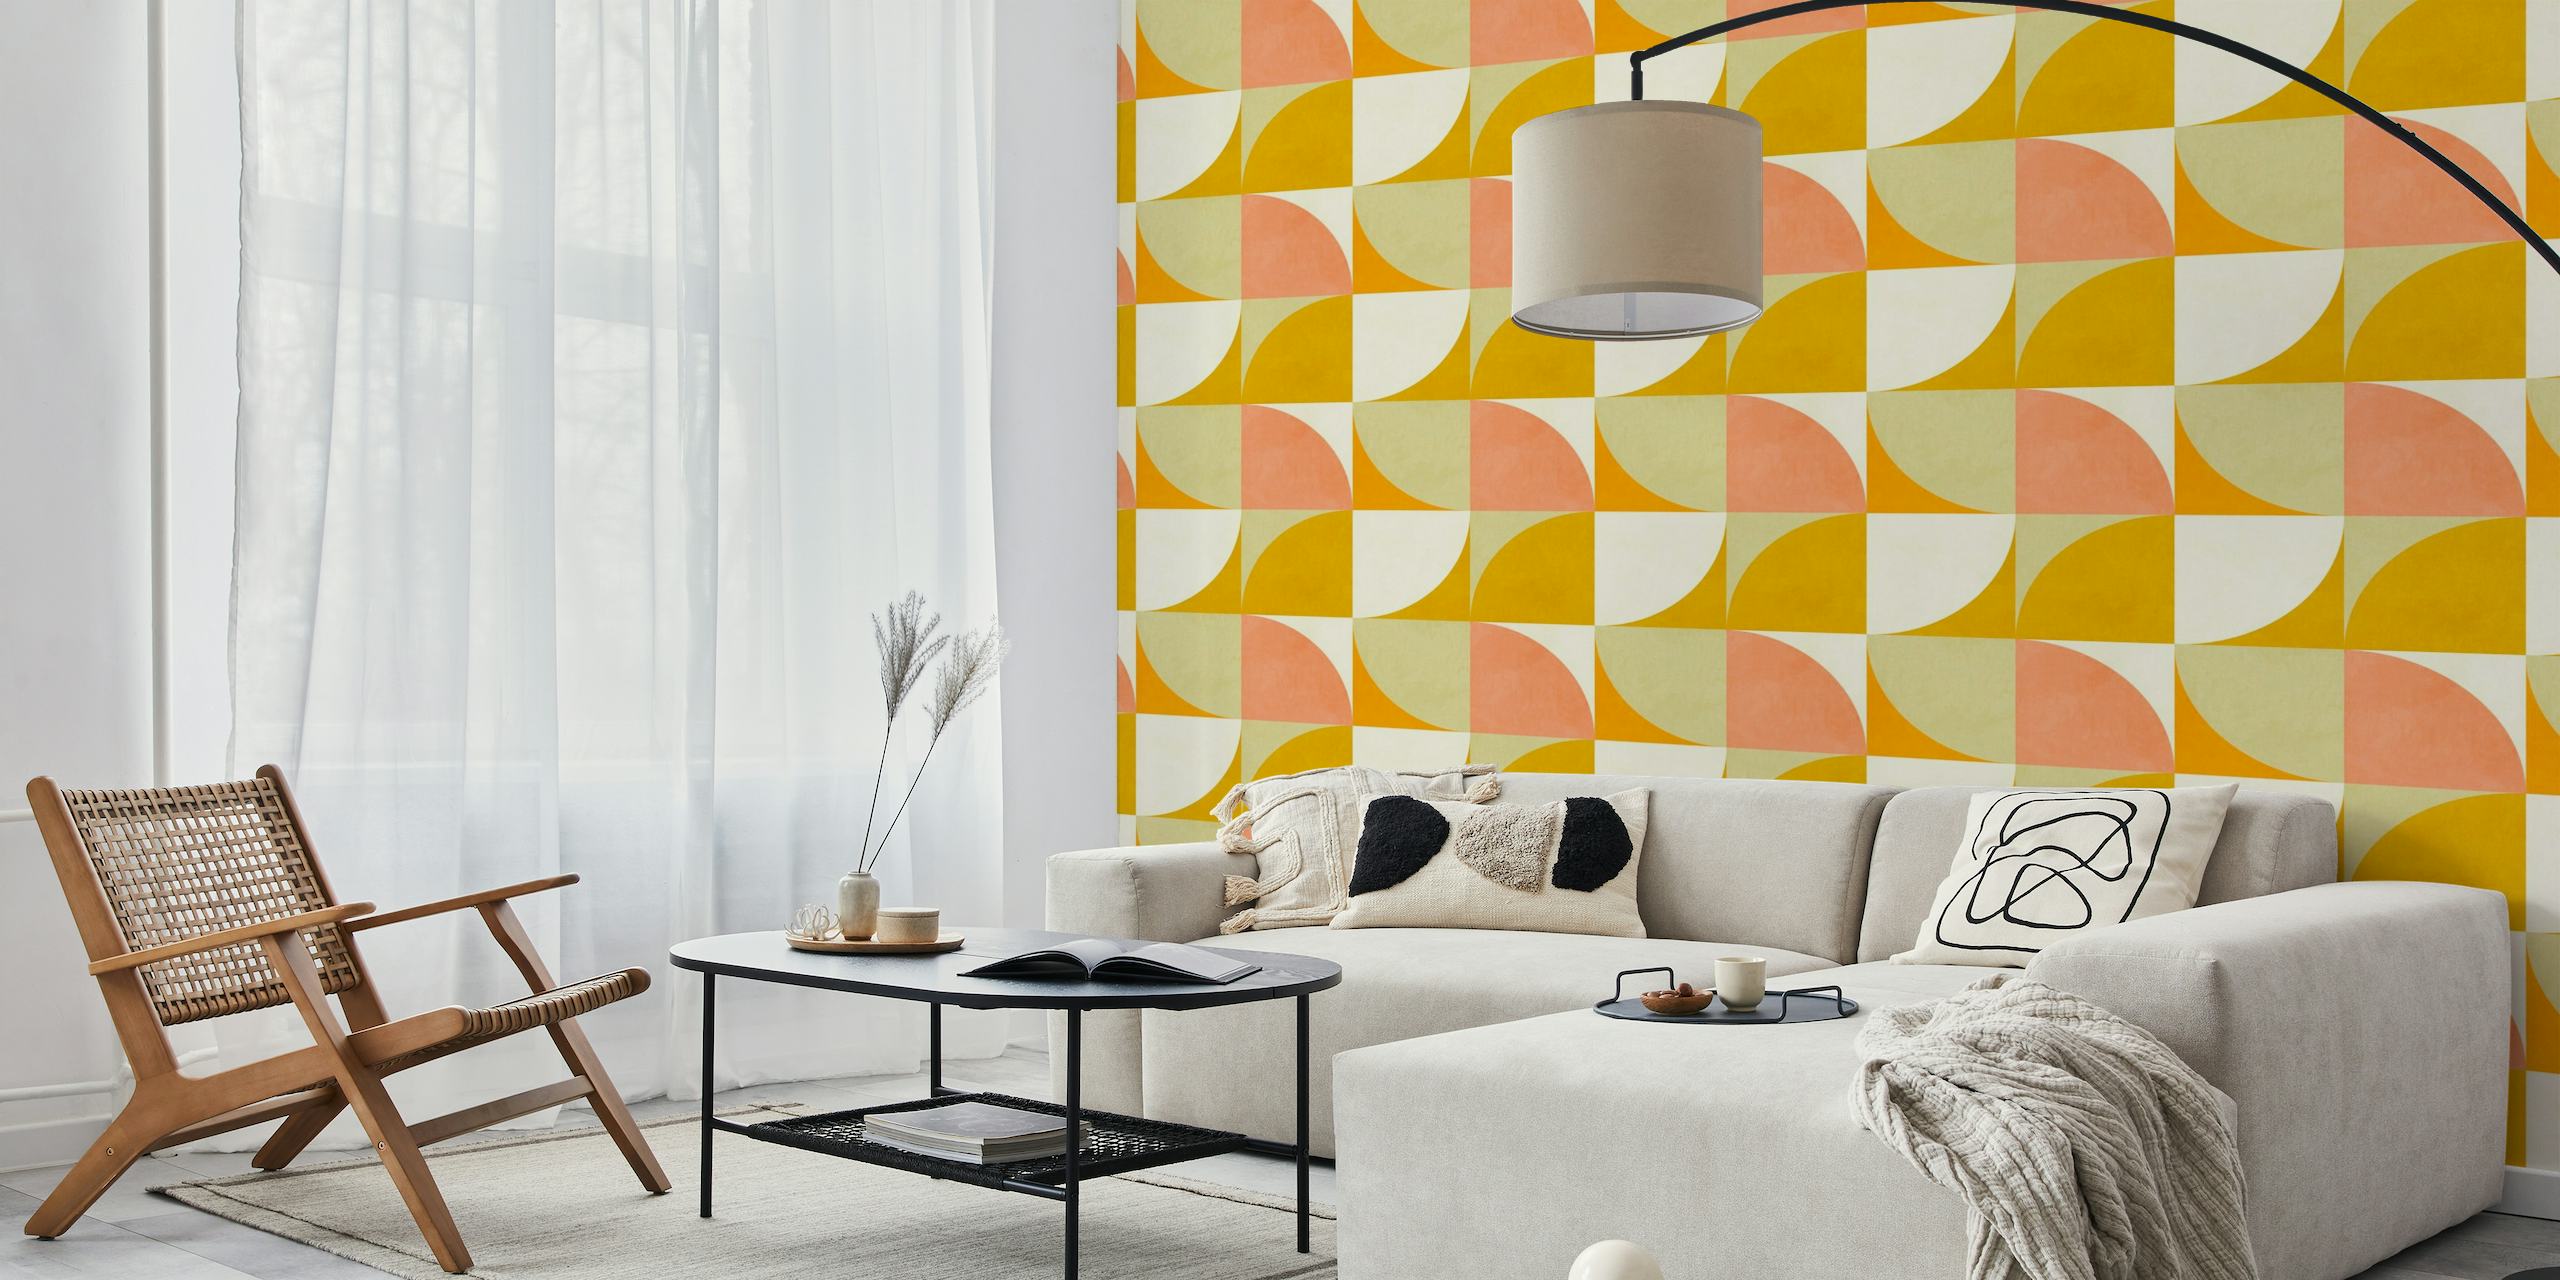 Papier peint mural d'inspiration Bauhaus avec des formes géométriques audacieuses dans des teintes rouges, orange et jaunes